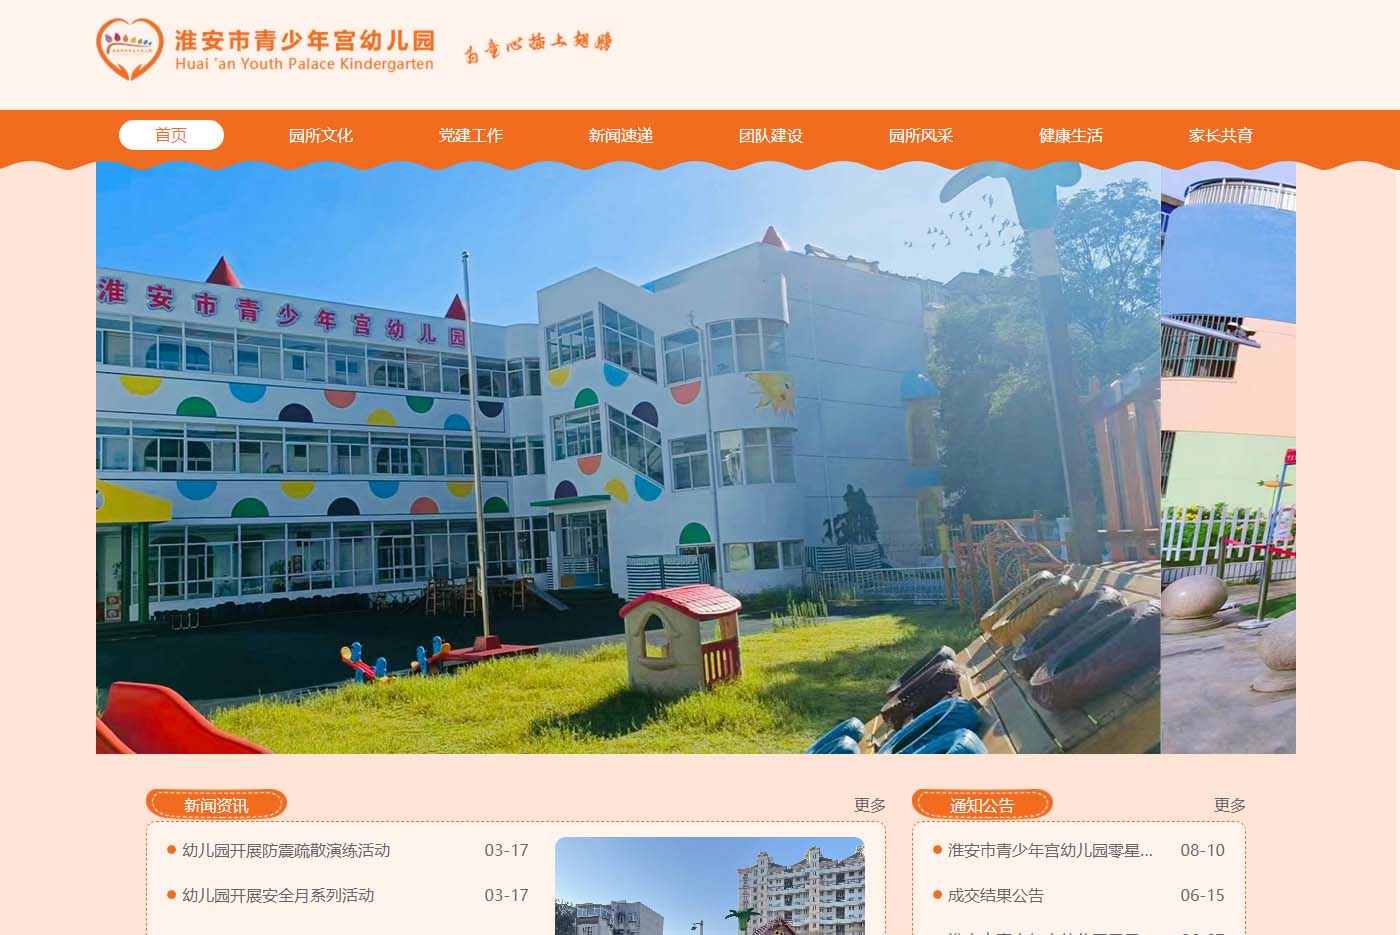 青少年宫幼儿园创办于1989年，隶属于共青团淮安市委，目前有总园、健康园和化工园。